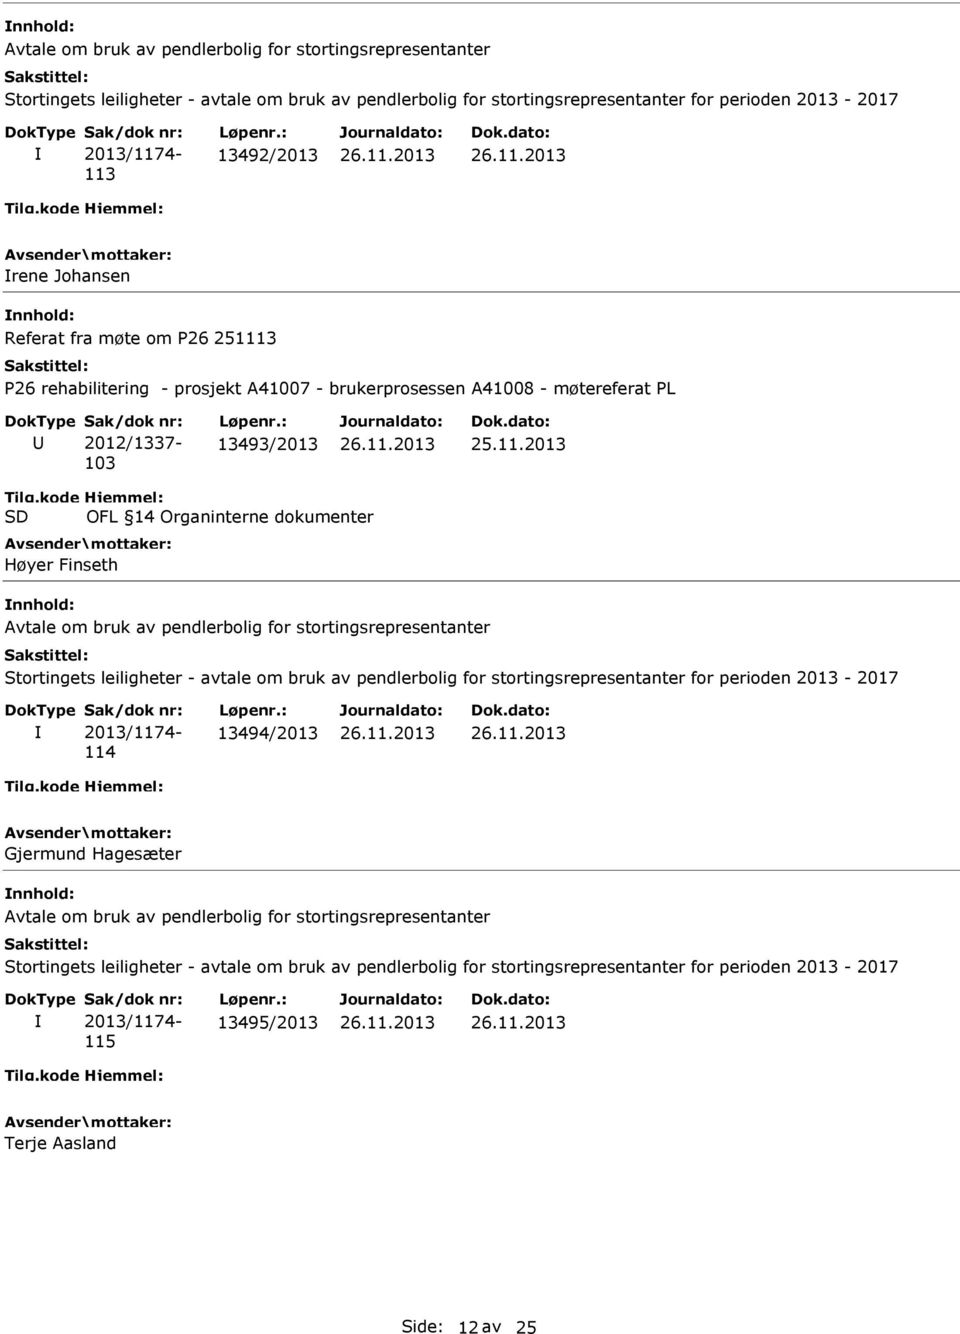 bruk av pendlerbolig for stortingsrepresentanter Stortingets leiligheter - avtale om bruk av pendlerbolig for stortingsrepresentanter for perioden 2013-2017 2013/1174-114 13494/2013 Gjermund